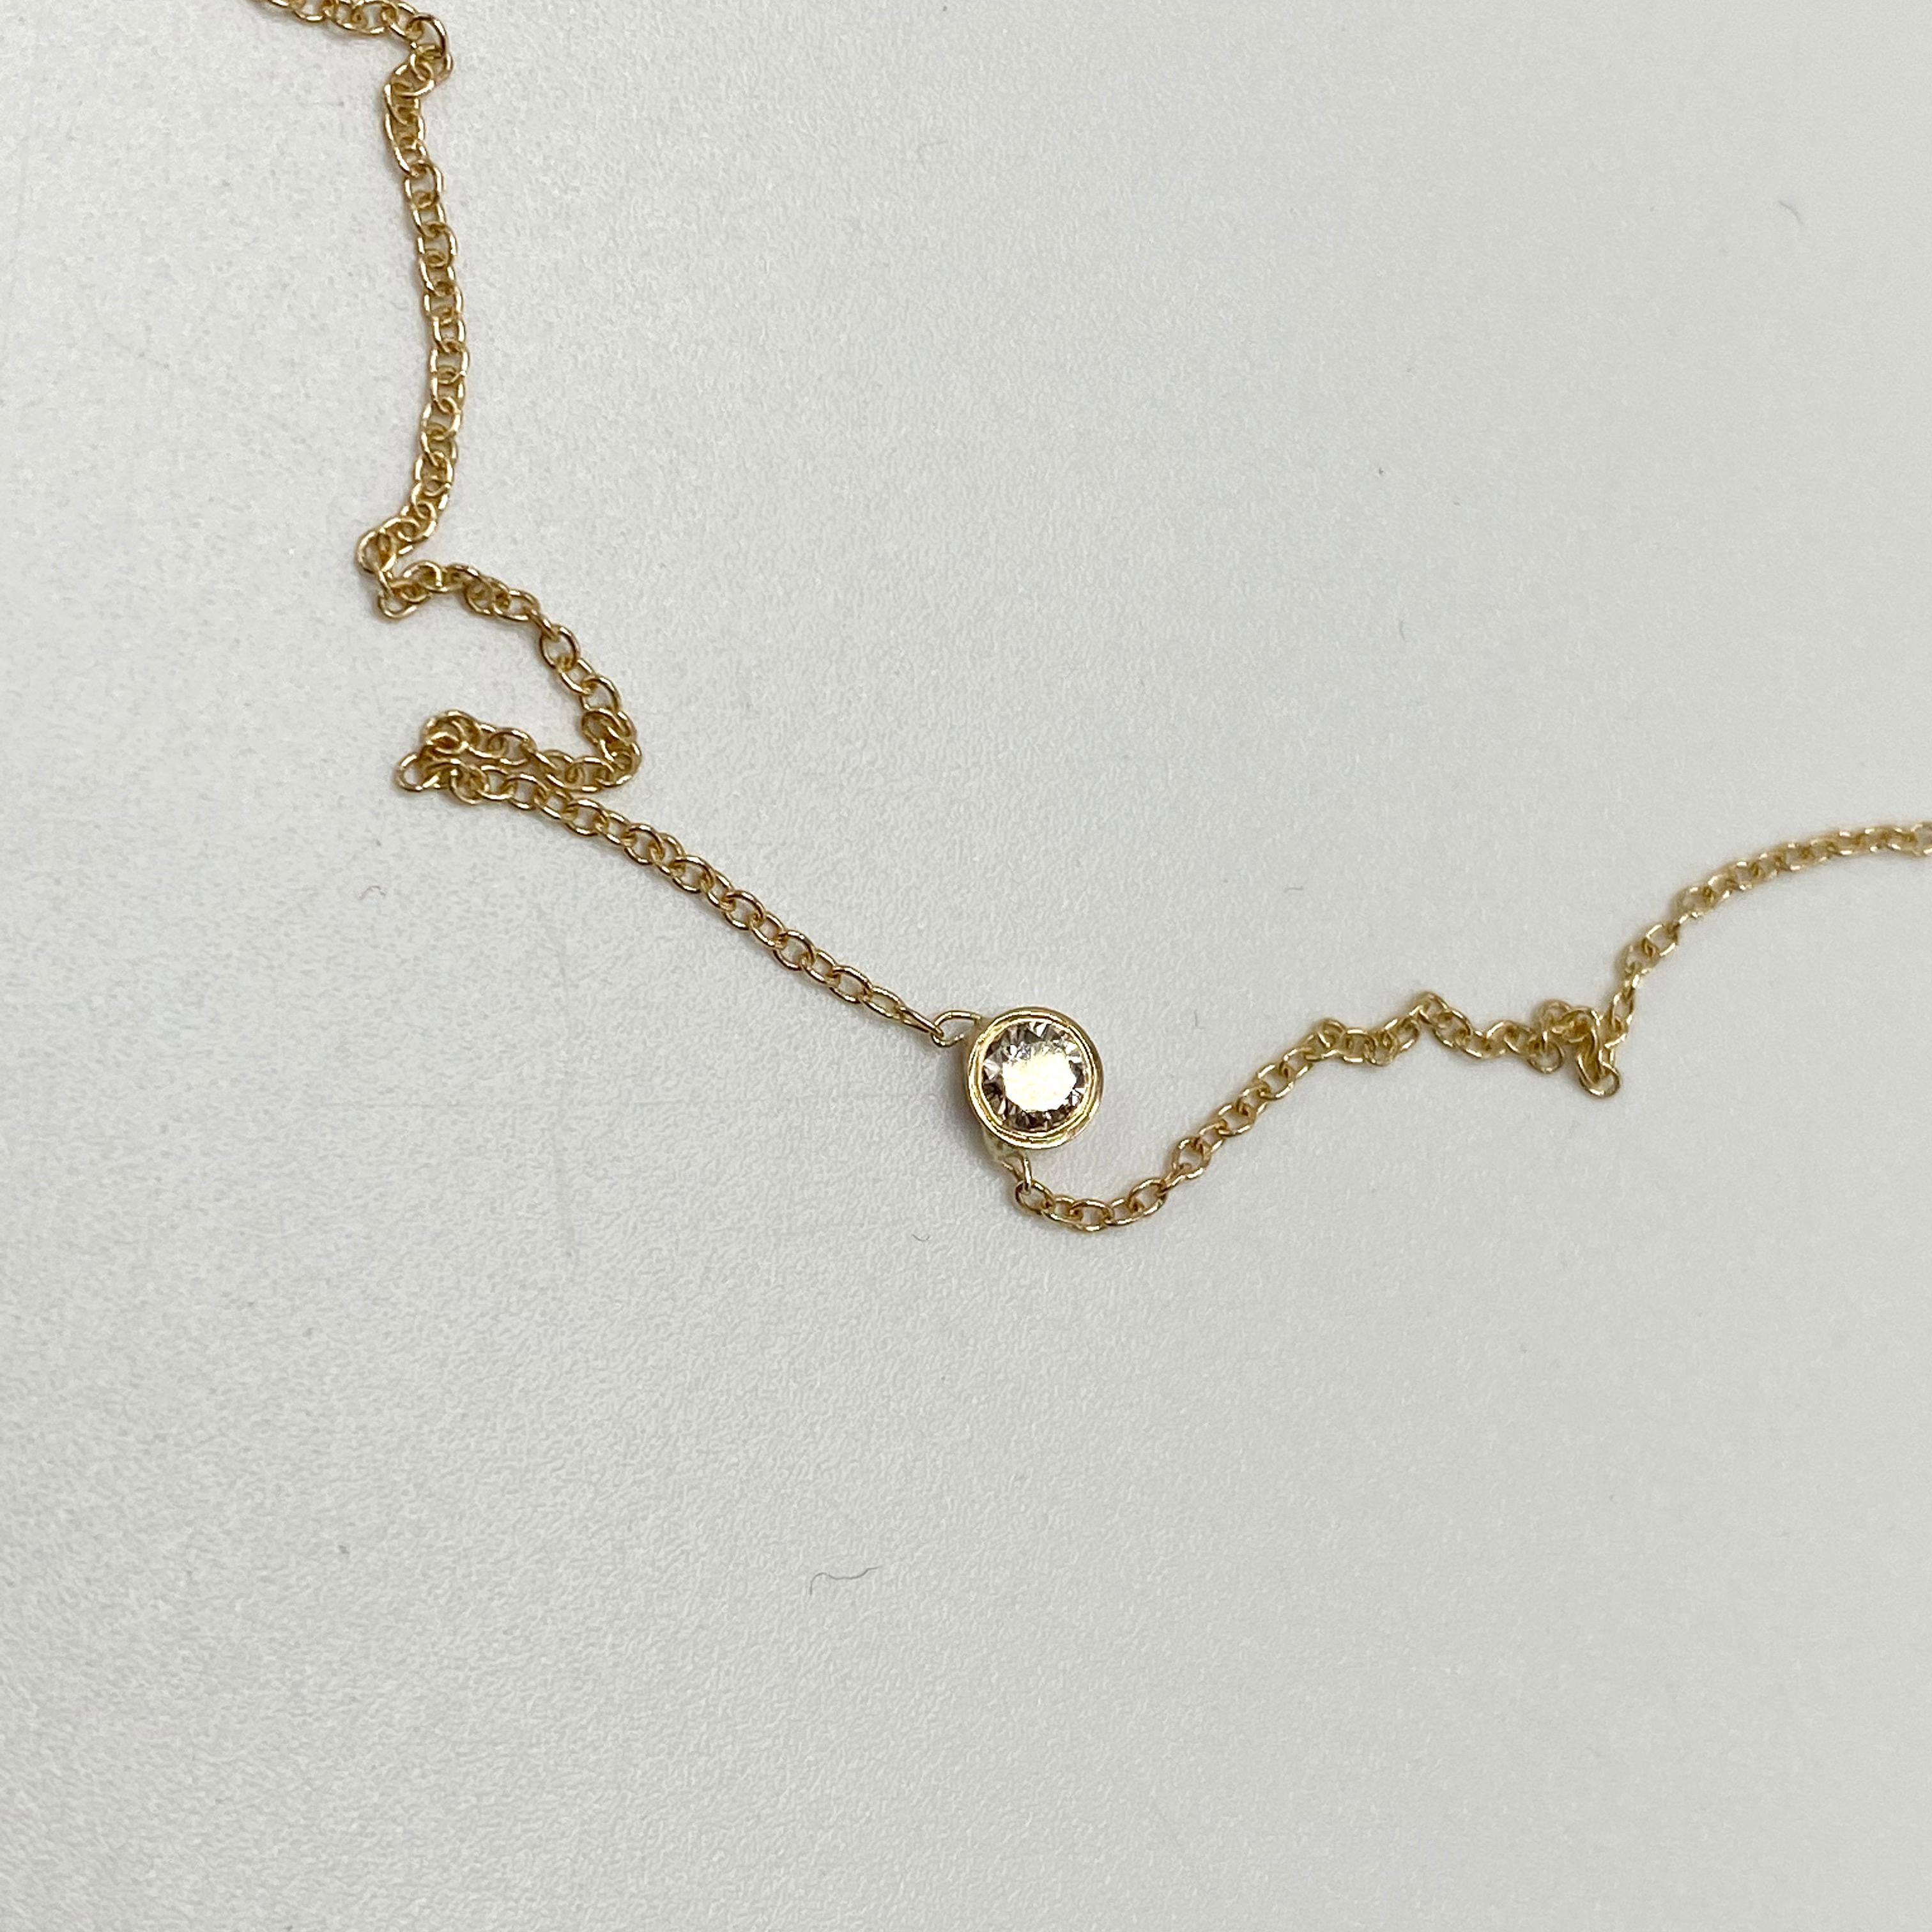 Brilliant Cut White Diamond Gold Chain Necklace Choker For Sale